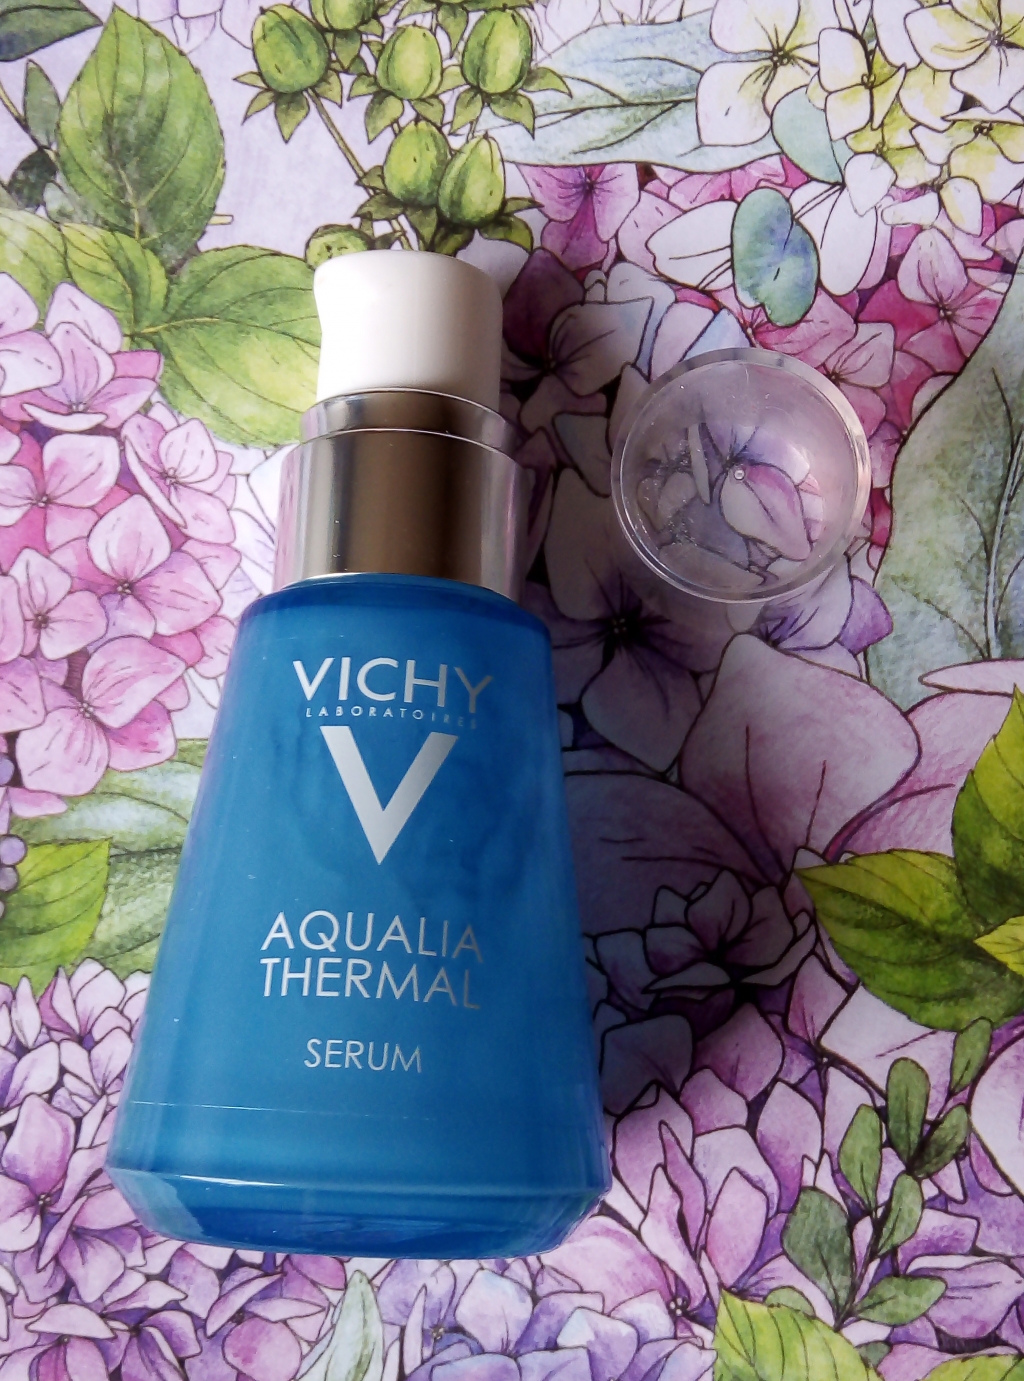 Vichy Сыворотка AQUALIA THERMAL Serum 30 ml - Лучшее средство для увлажнения кожи.